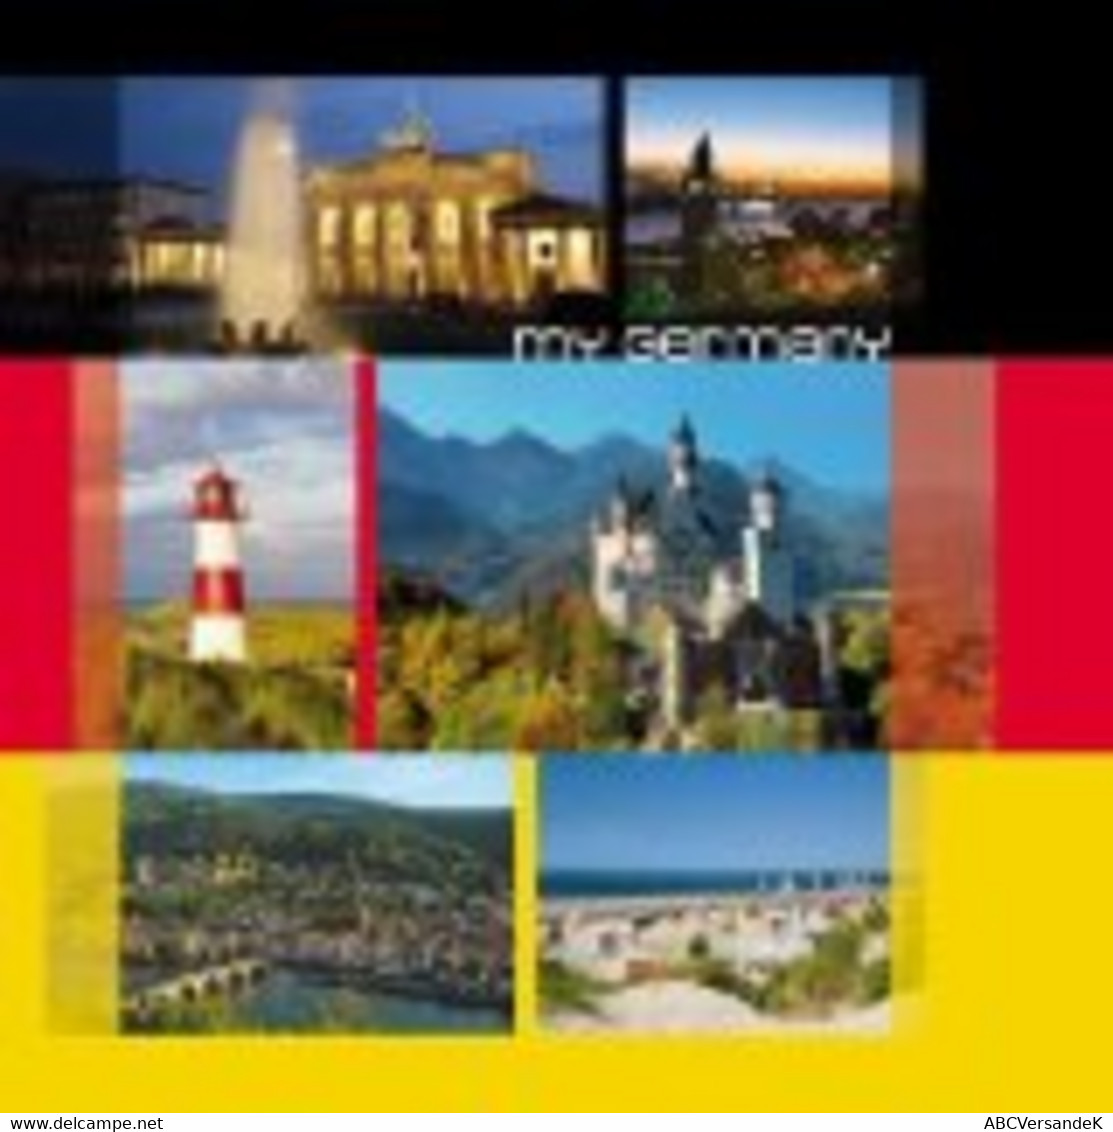 My Germany - Fotografie